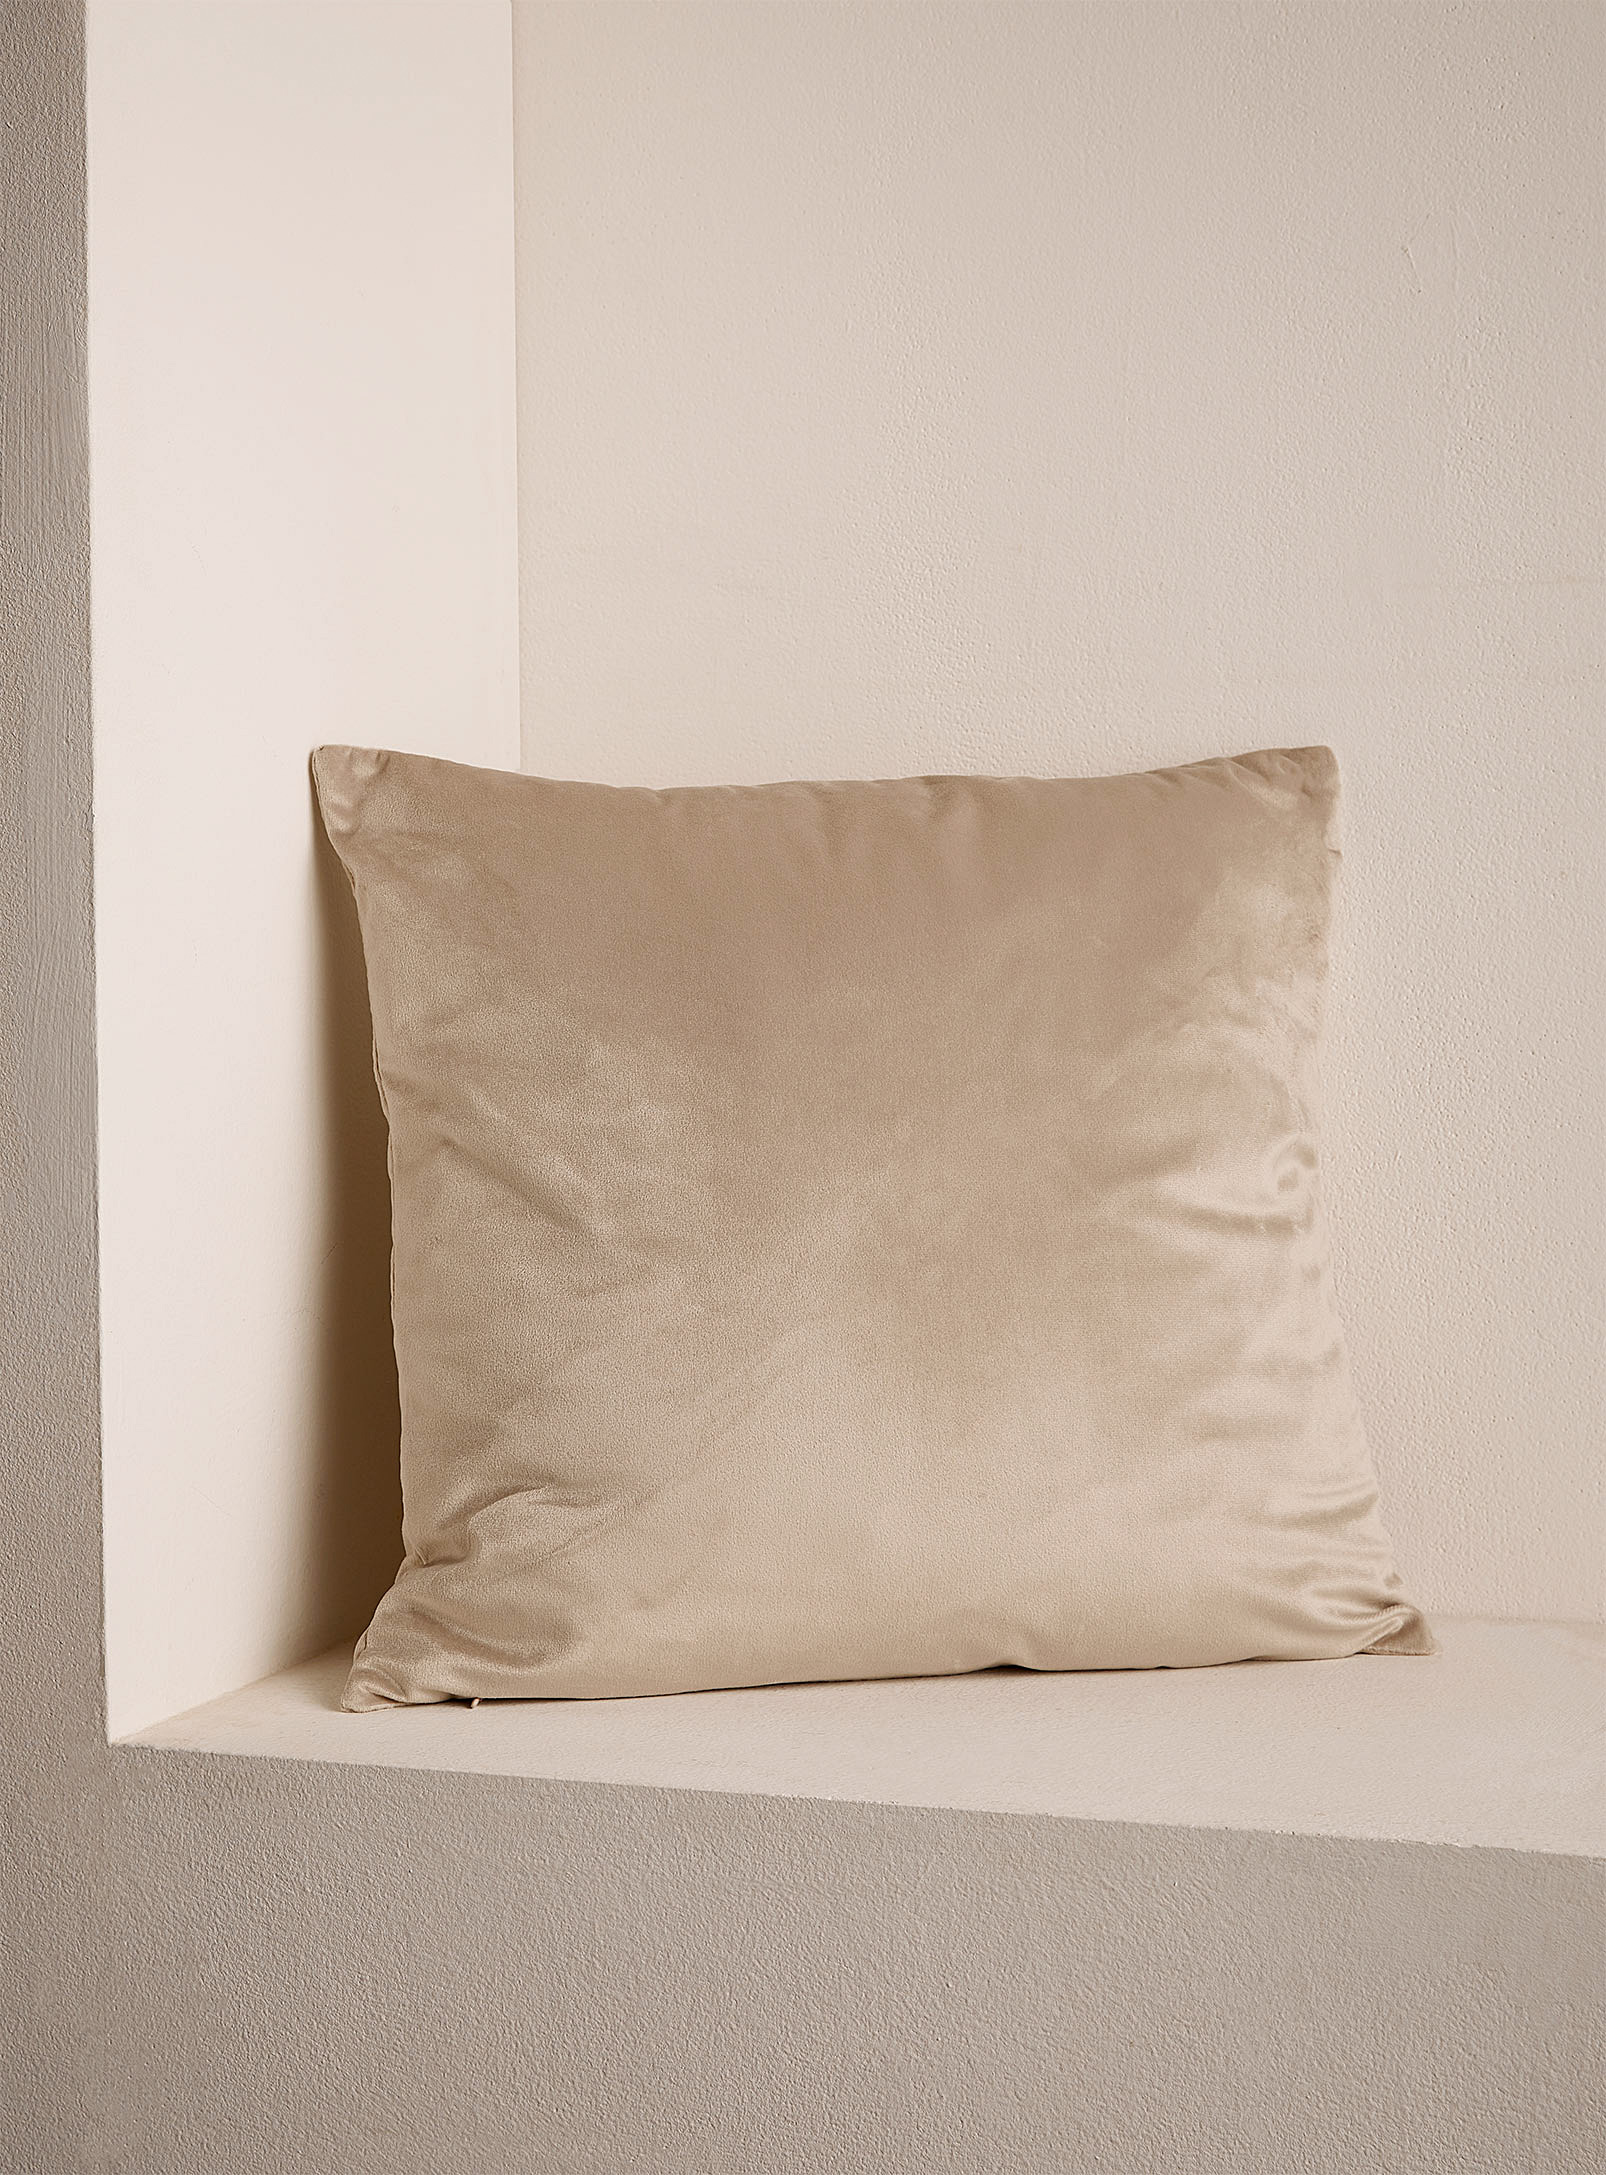 Simons Maison Opulent Velvet Cushion 45 X 45 Cm In Cream Beige